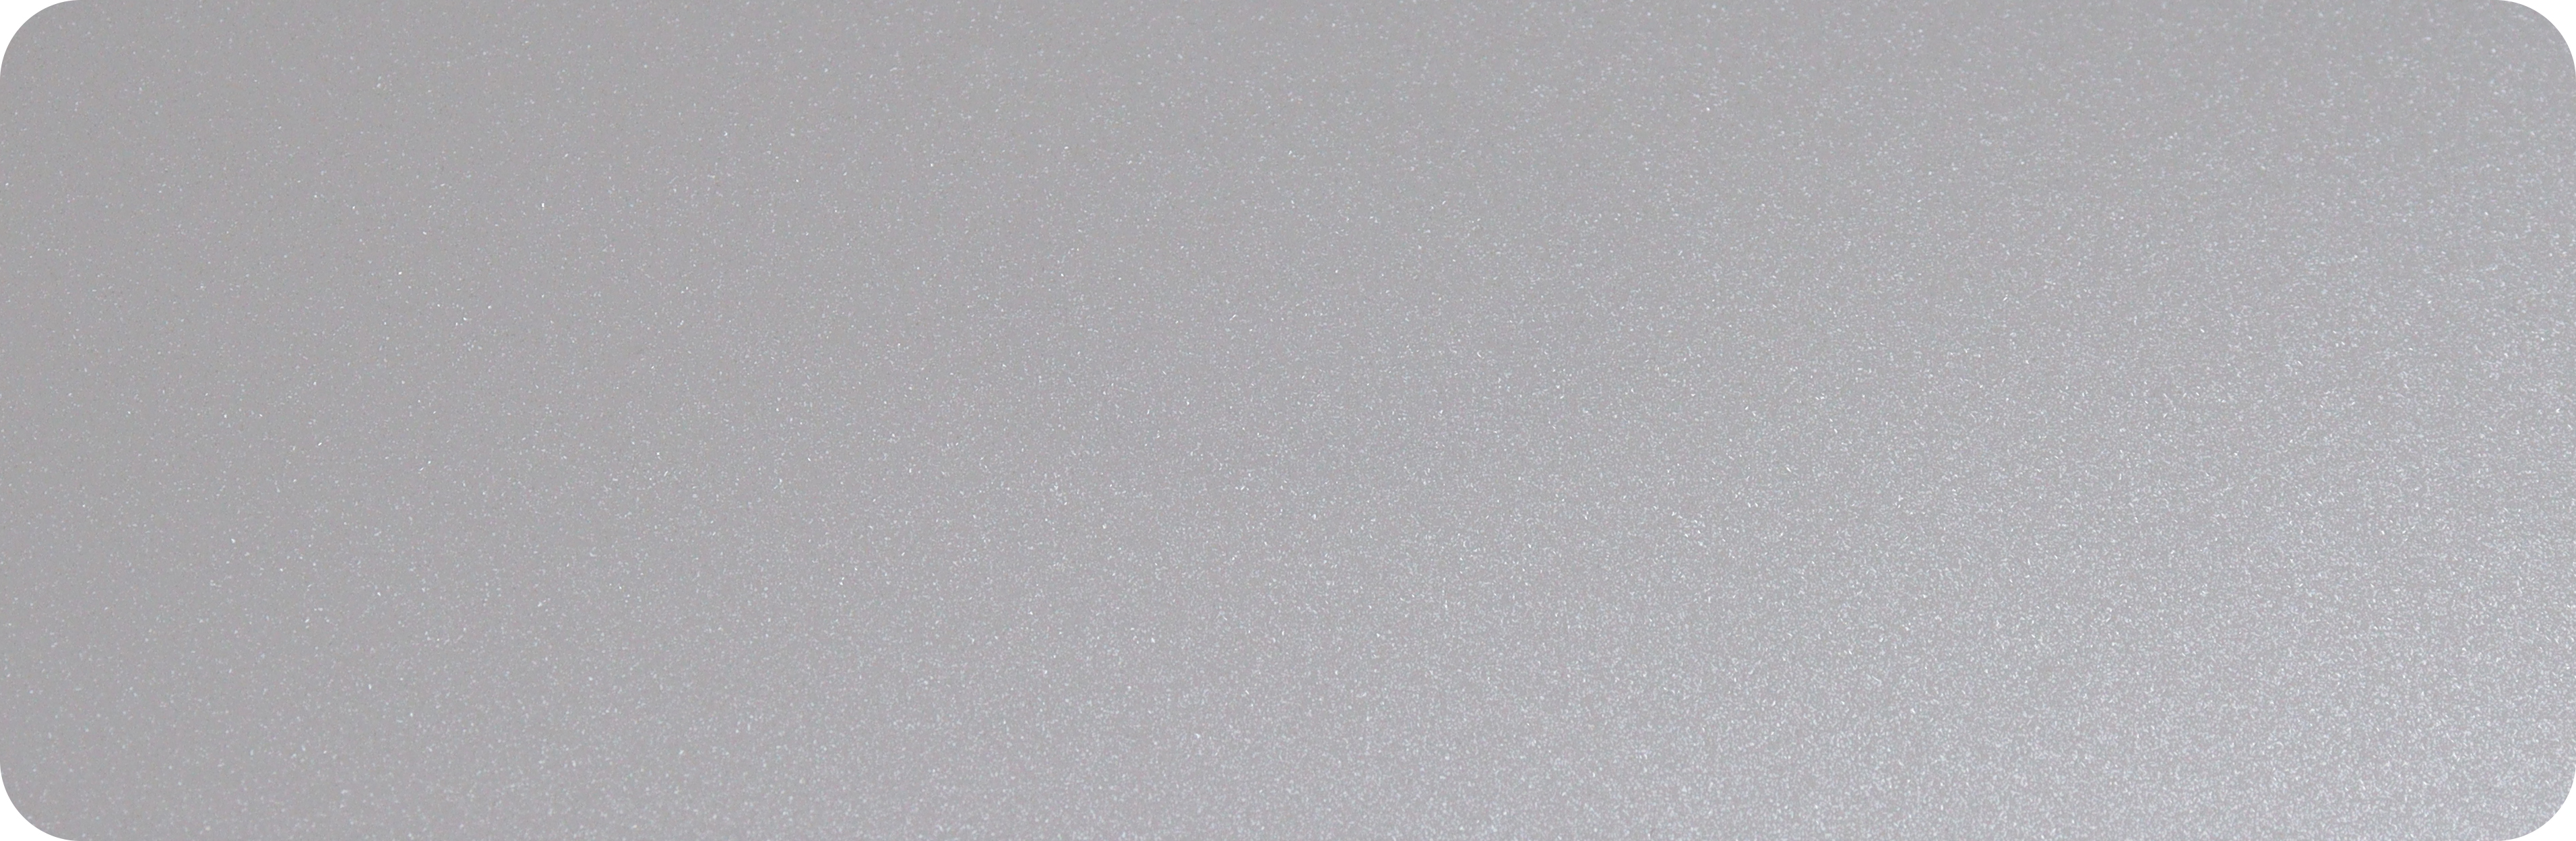 1.TPU钻石白-TPU-berlian putih